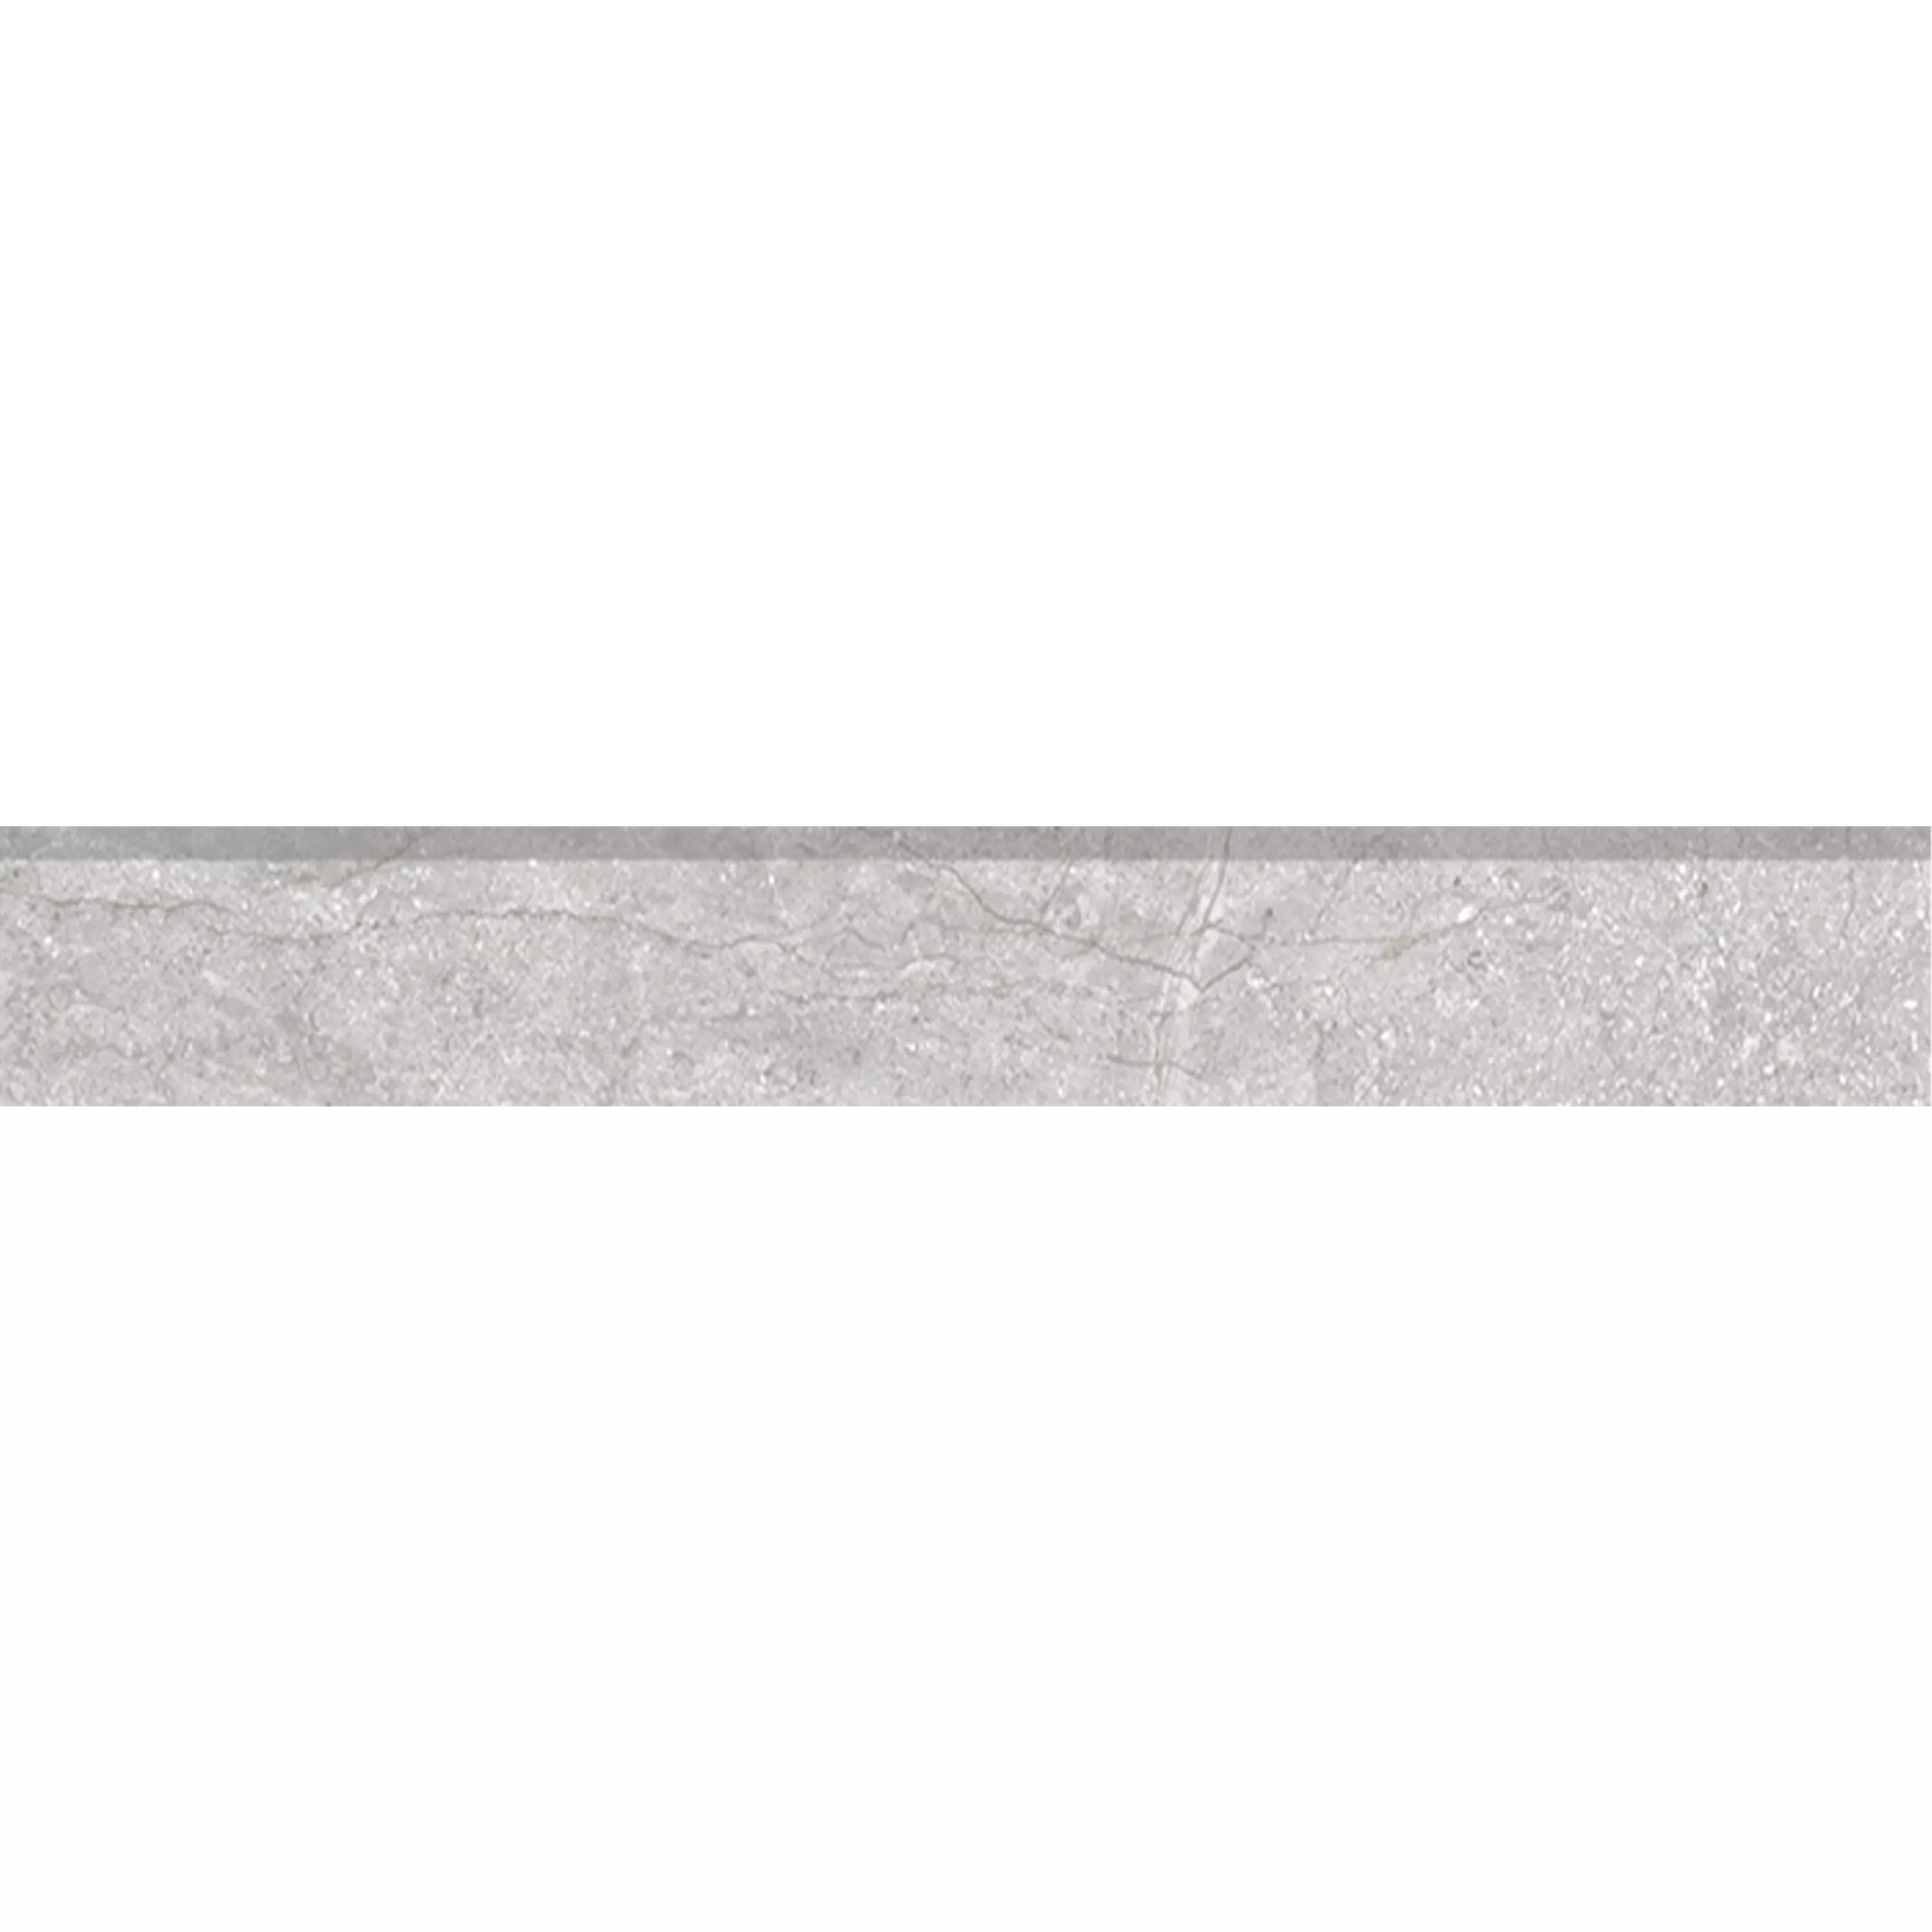 Πλακάκια Δαπέδου Pangea Μαρμάρινη Όψη Παγωμένος Ασήμι Bάση 7x120cm